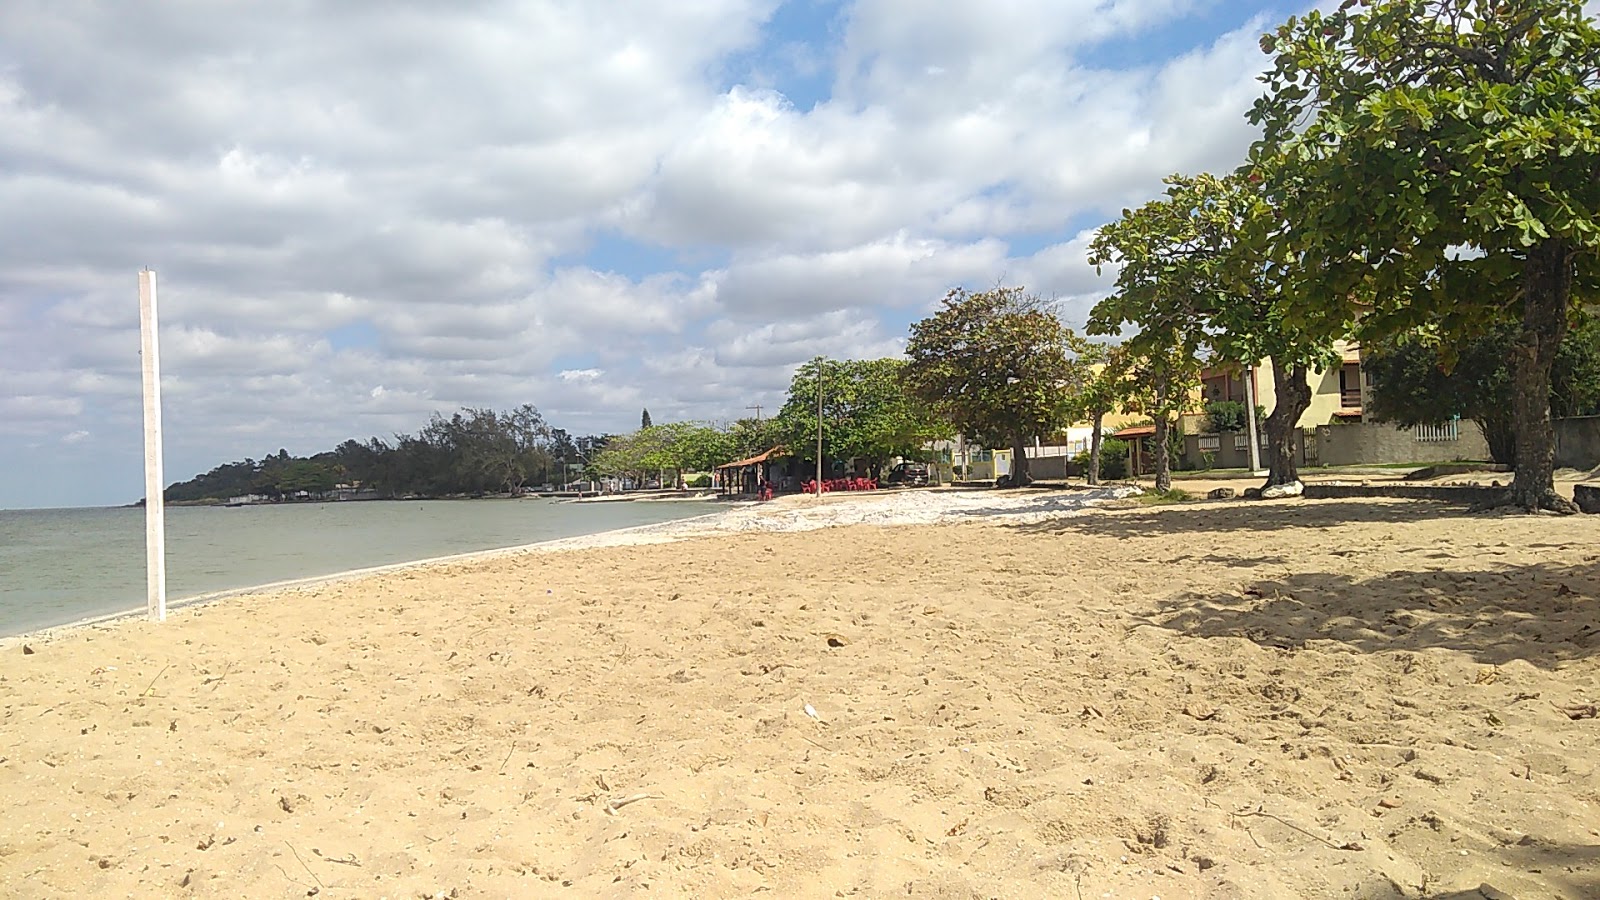 Photo de Araruama Lagoon Beach - endroit populaire parmi les connaisseurs de la détente